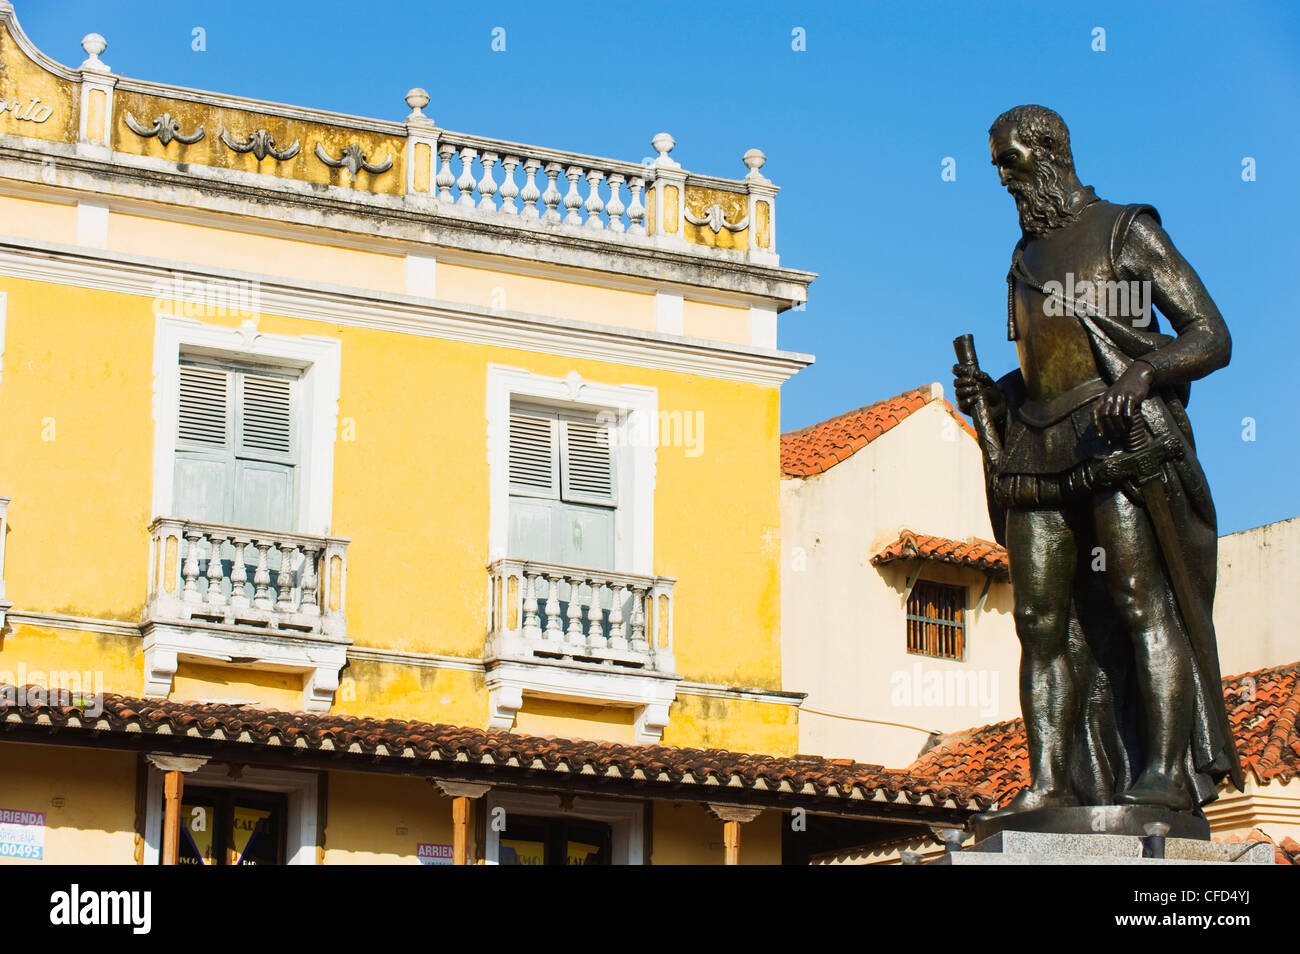 Monumento a Pedro Heredia, Coches, Plaza de la ciudad vieja, Patrimonio Mundial de la UNESCO, Cartagena de Indias, Colombia, Sur America Foto de stock